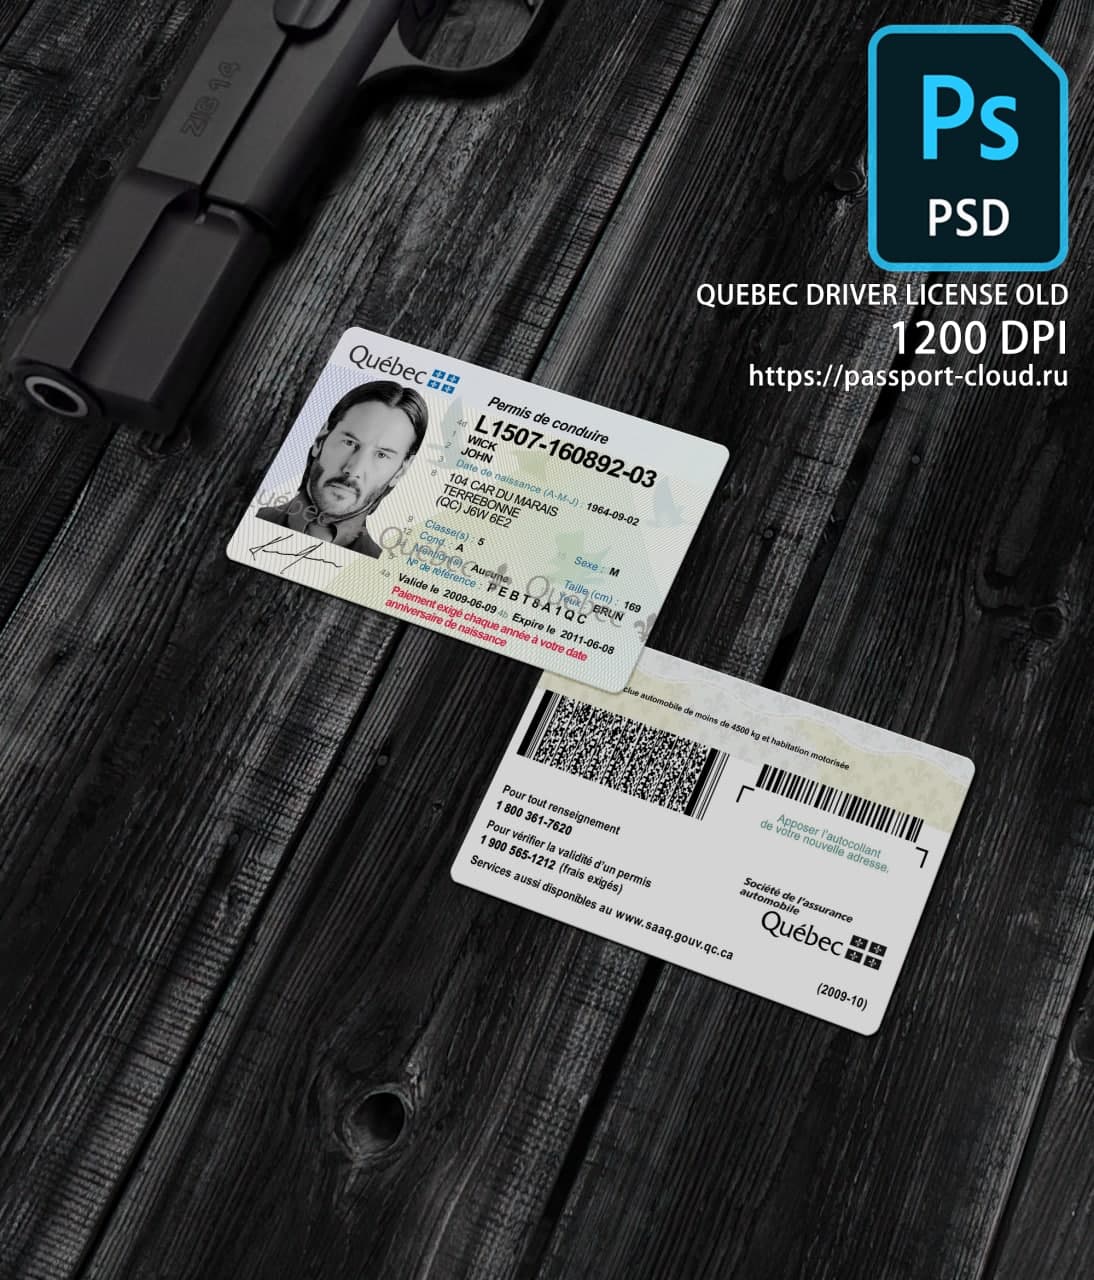 Quebec Driver License OLD1